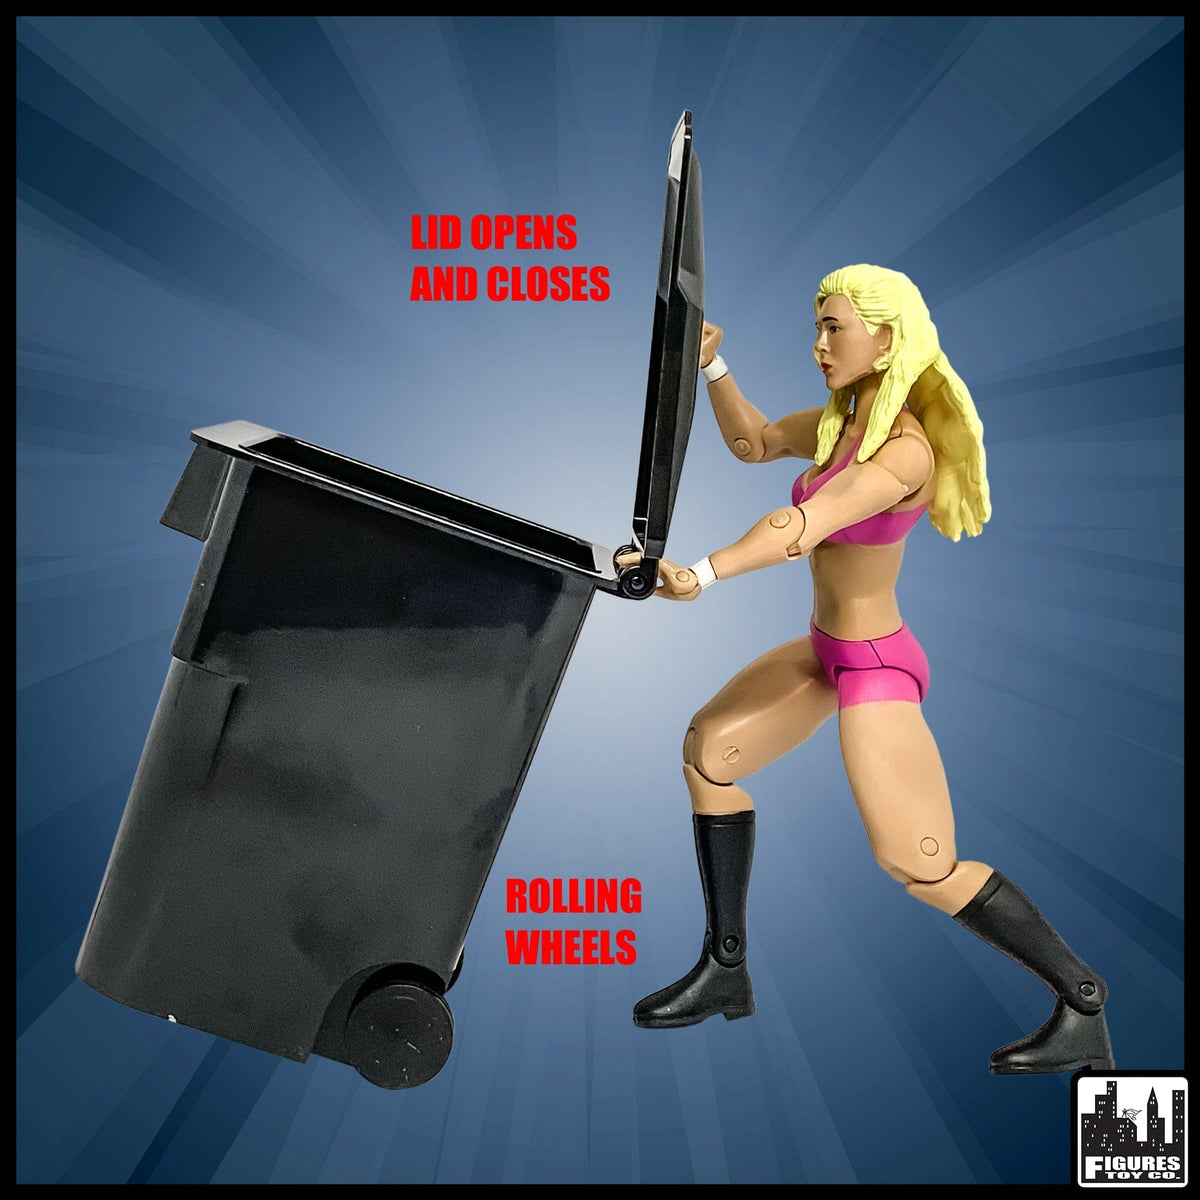 Black Dumpster &amp; 3 Black Trash Cans With Lid &amp; Wheels for WWE Wrestling Action Figures